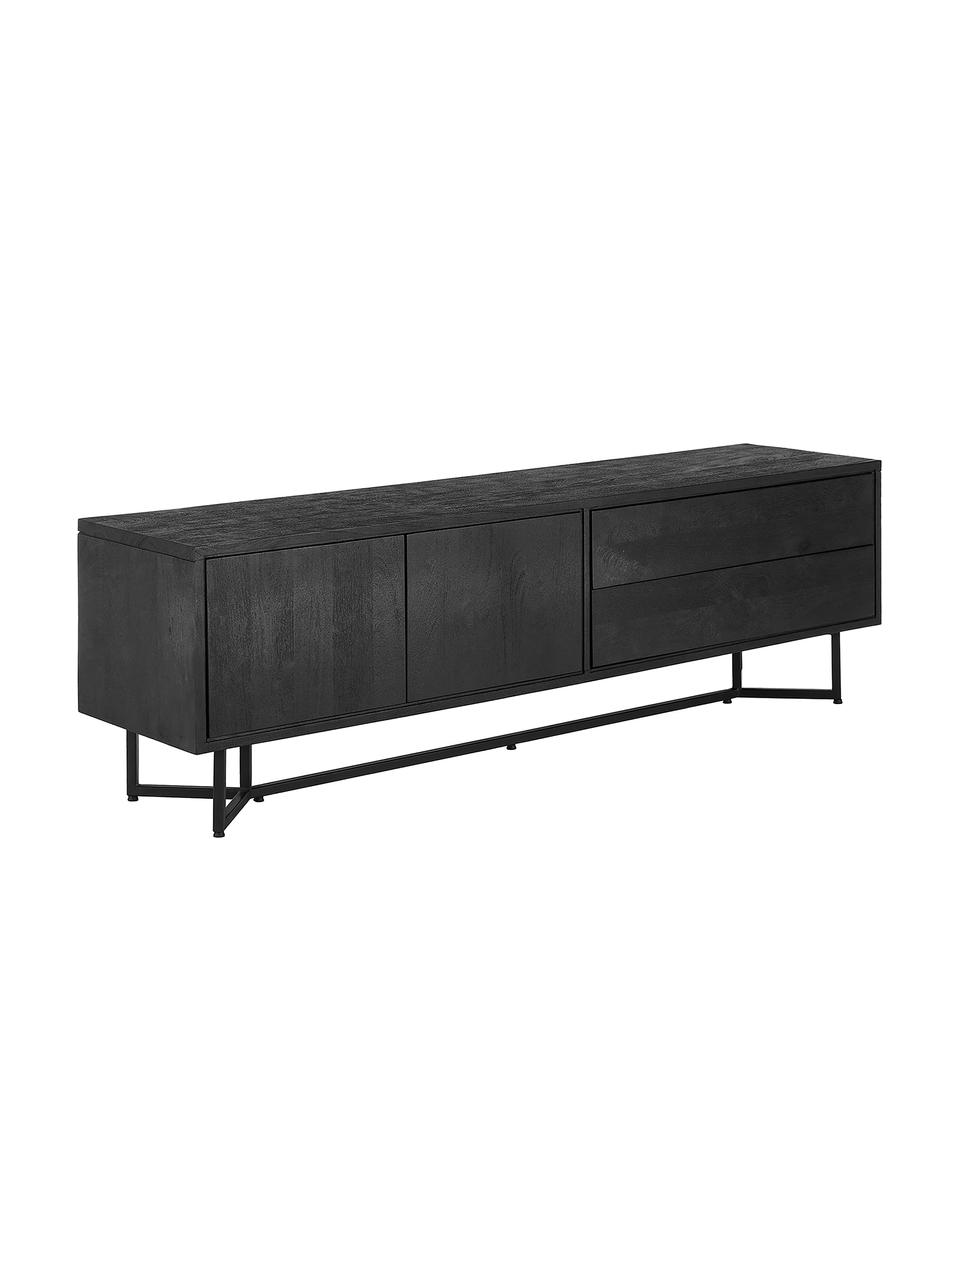 Tv-meubel Luca met deuren van massief hout, Frame: gepoedercoat metaal, Zwart, B 180 x H 54 cm